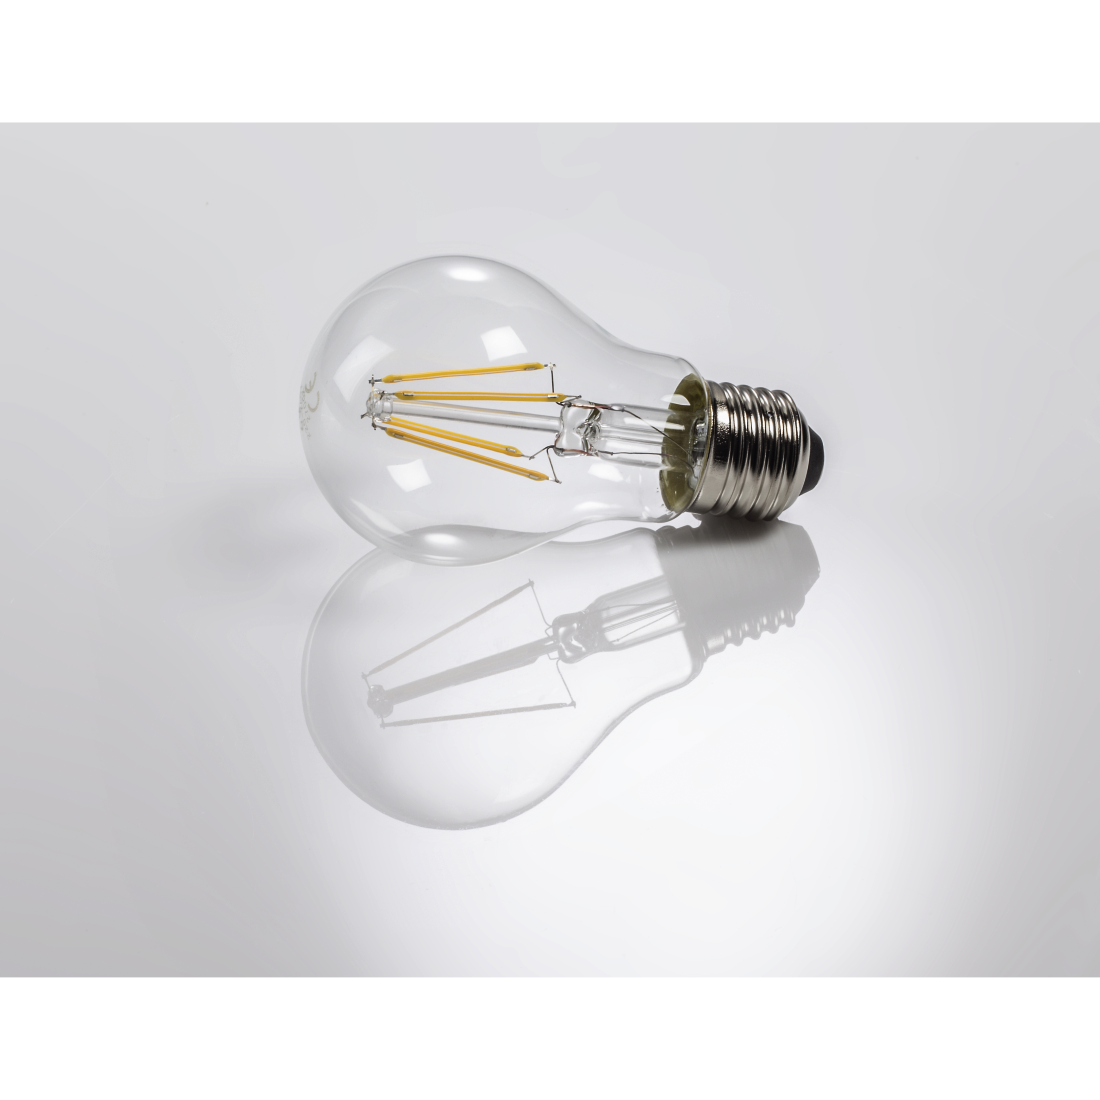 abx3 High-Res Image 3 - Xavax, Ampoule filament à LED, E27, 810lm rempl. amp. incand., 60W, blc chaud